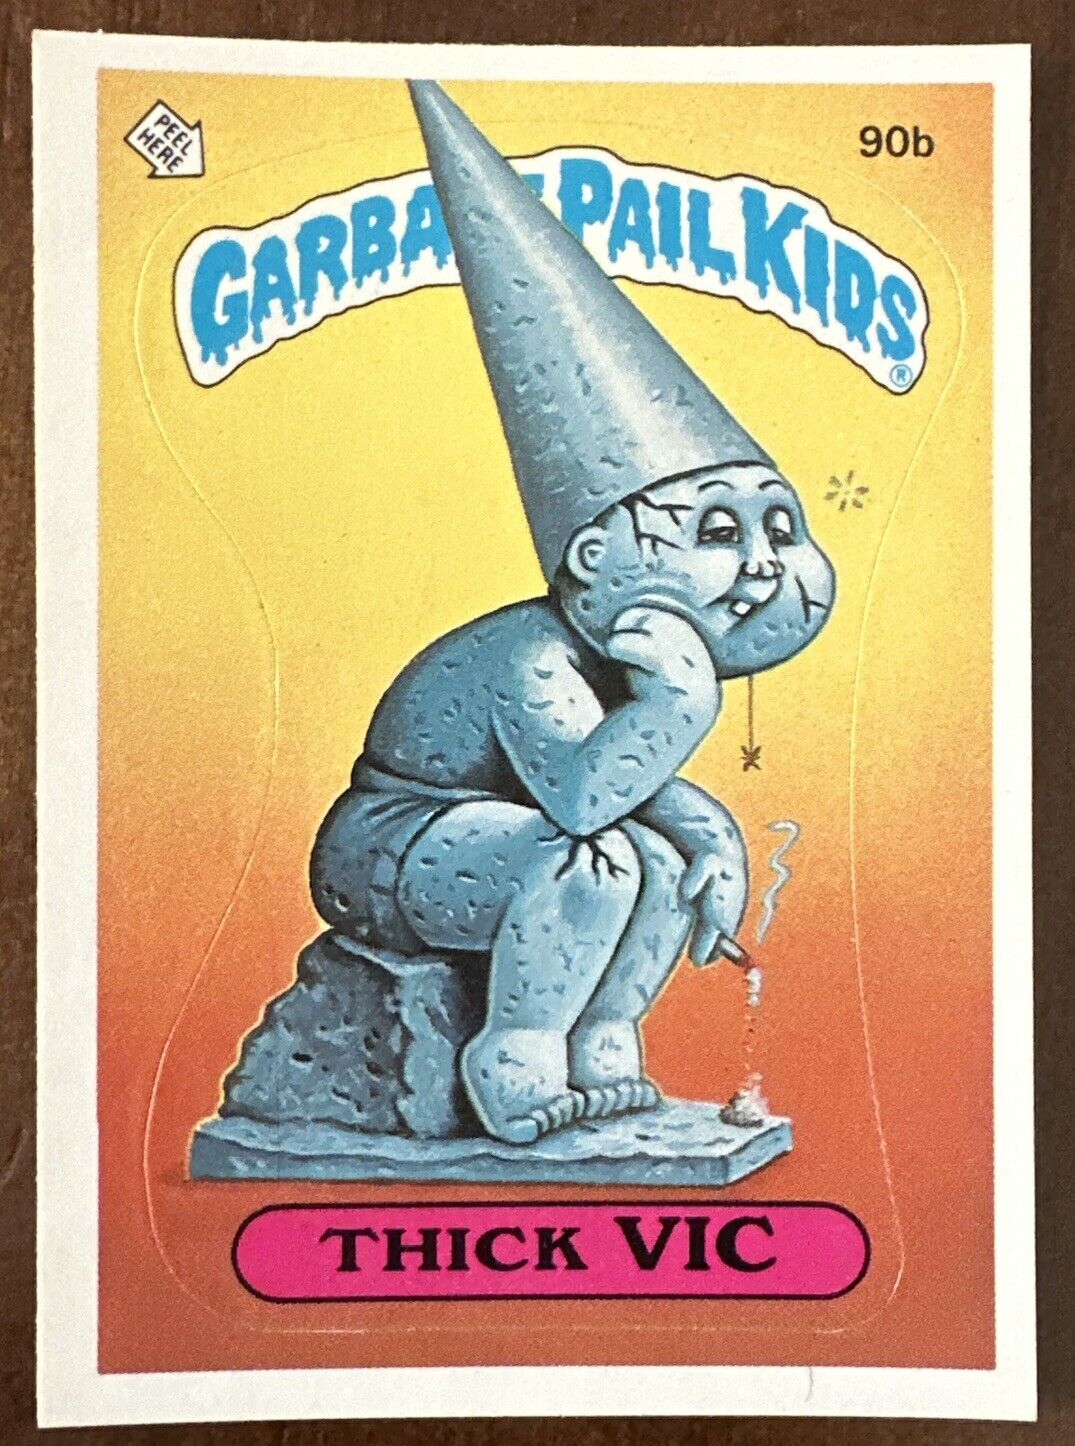 1986 Topps Garbage Pail Kids Original 3rd Series Card #90b THICK VIC Vintage GPK